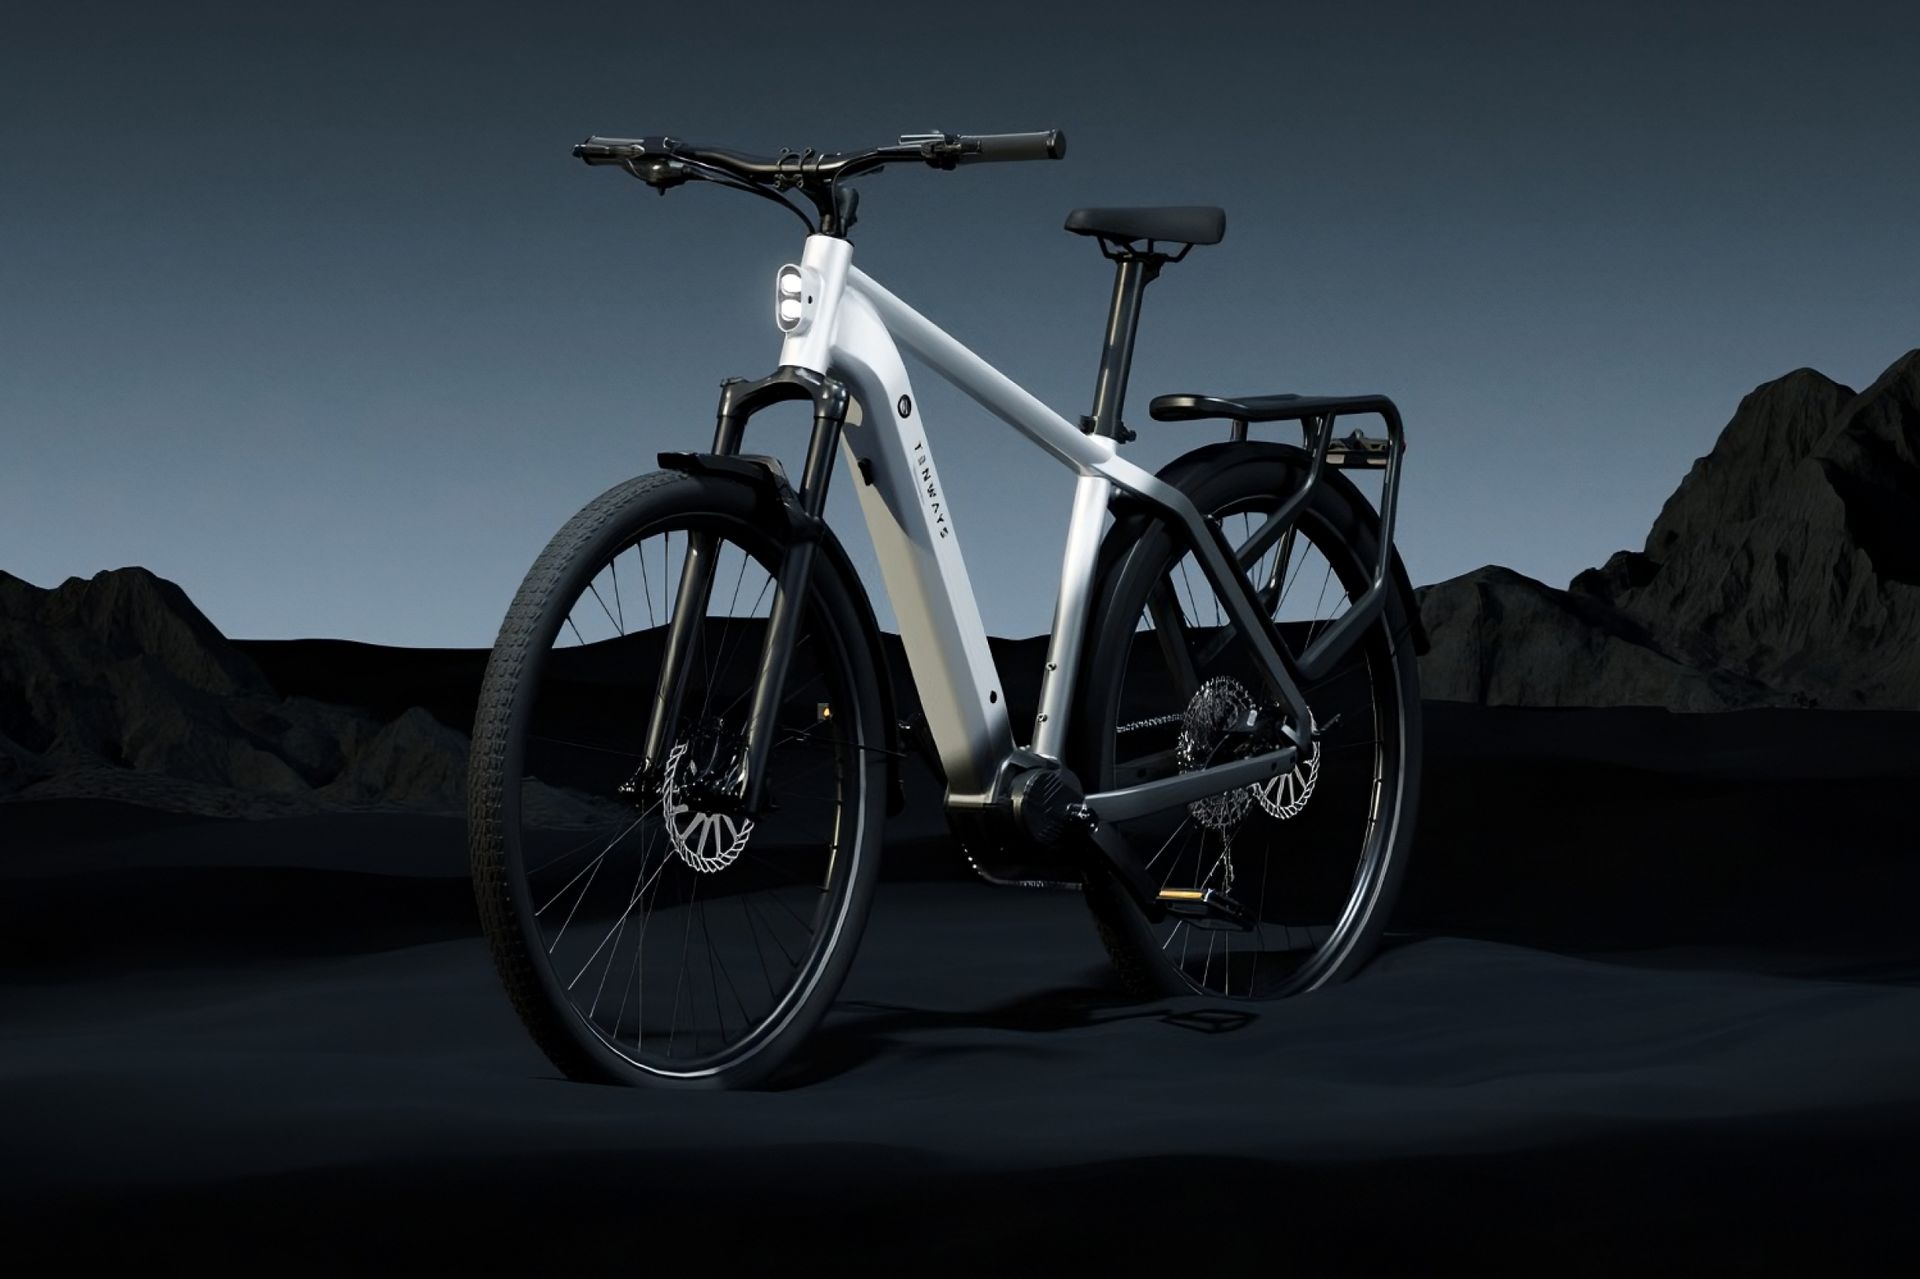 Tenways AGO X, un nouveau vélo électrique ambitieux et abordable